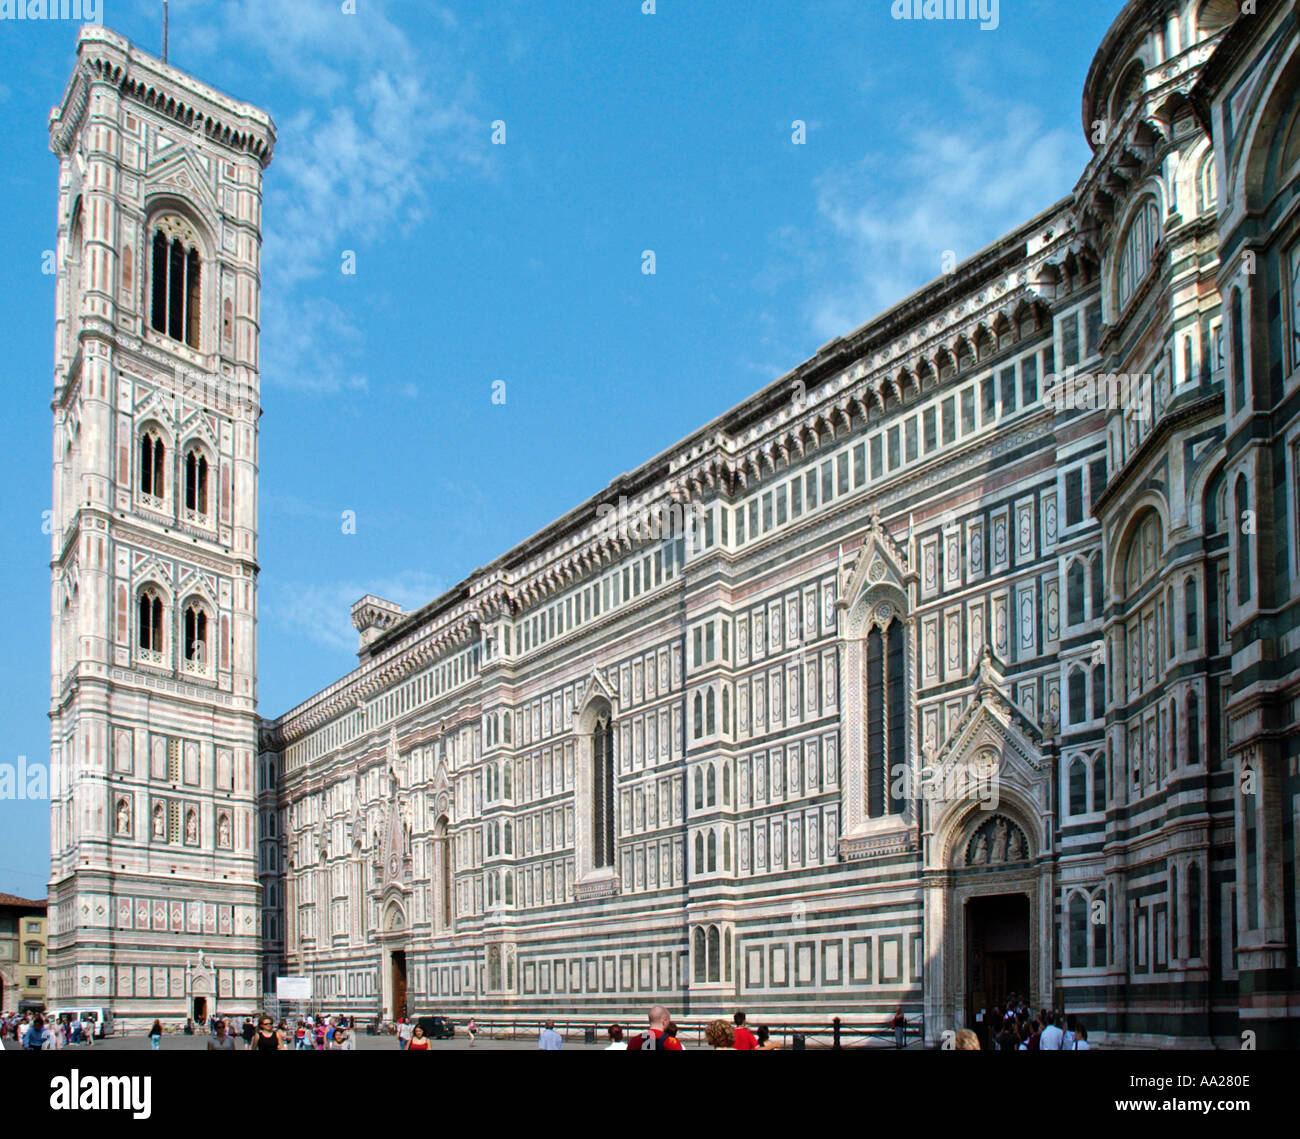 Basilica di Santa Maria del Fiore (the Duomo) and the Campanile, Piazza di San Giovanni, Florence, Tuscany, Italy Stock Photo